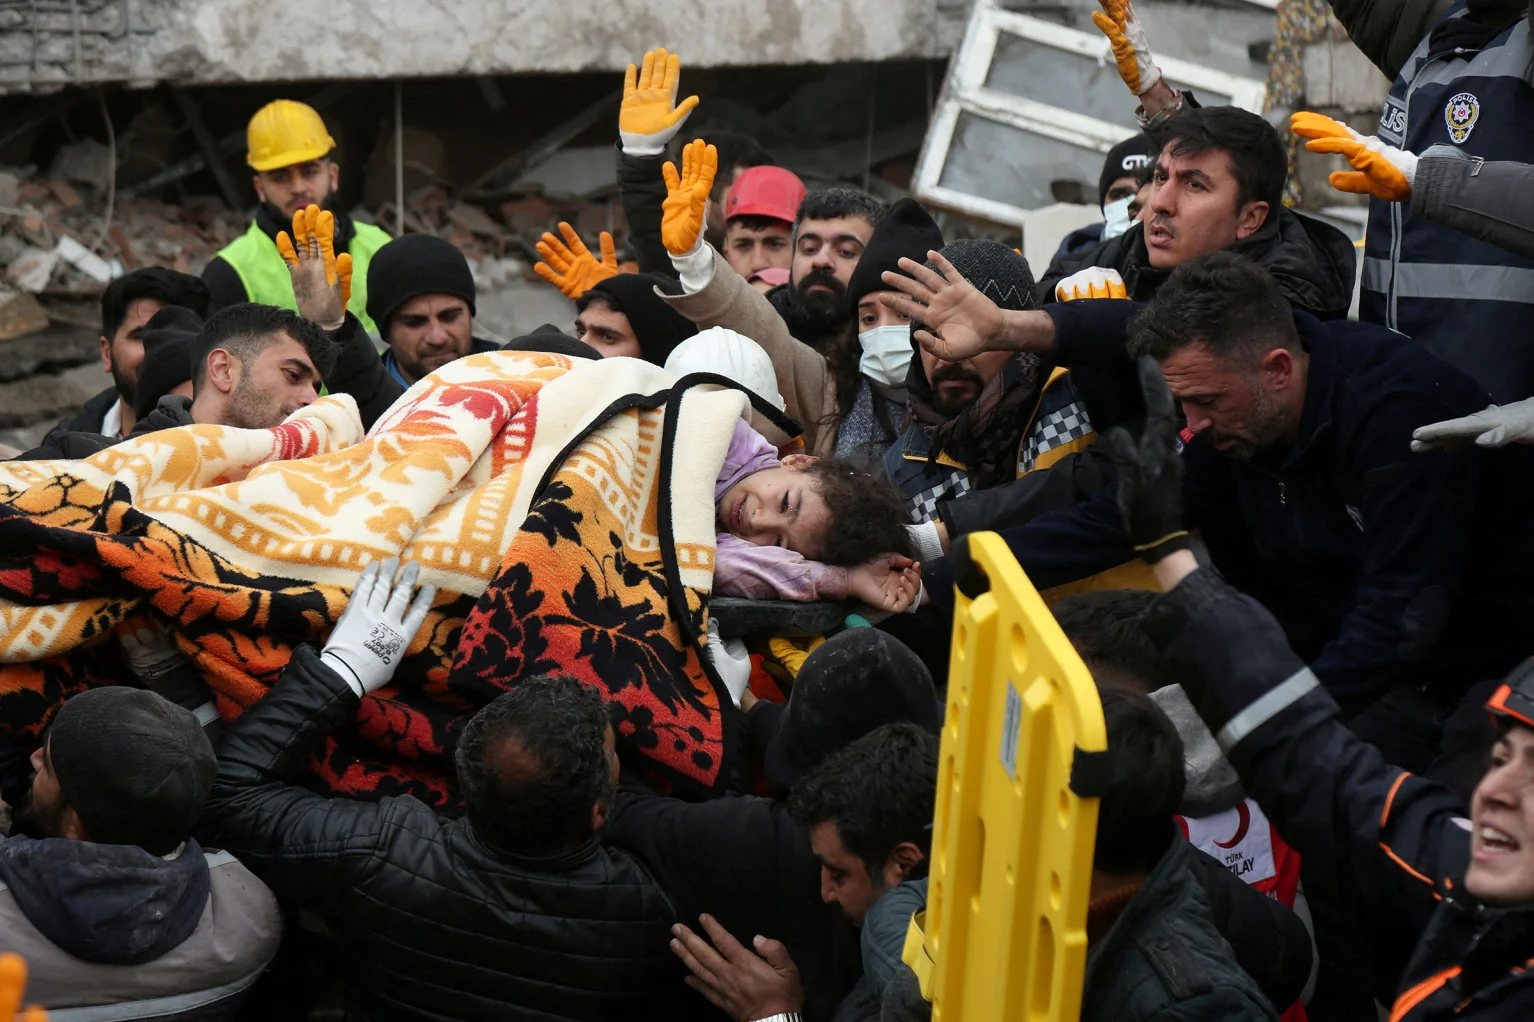 Chùm ảnh hiện trường và nỗ lực cứu hộ sau trận động đất ở Thổ Nhĩ Kỳ và Syria - Ảnh 13.